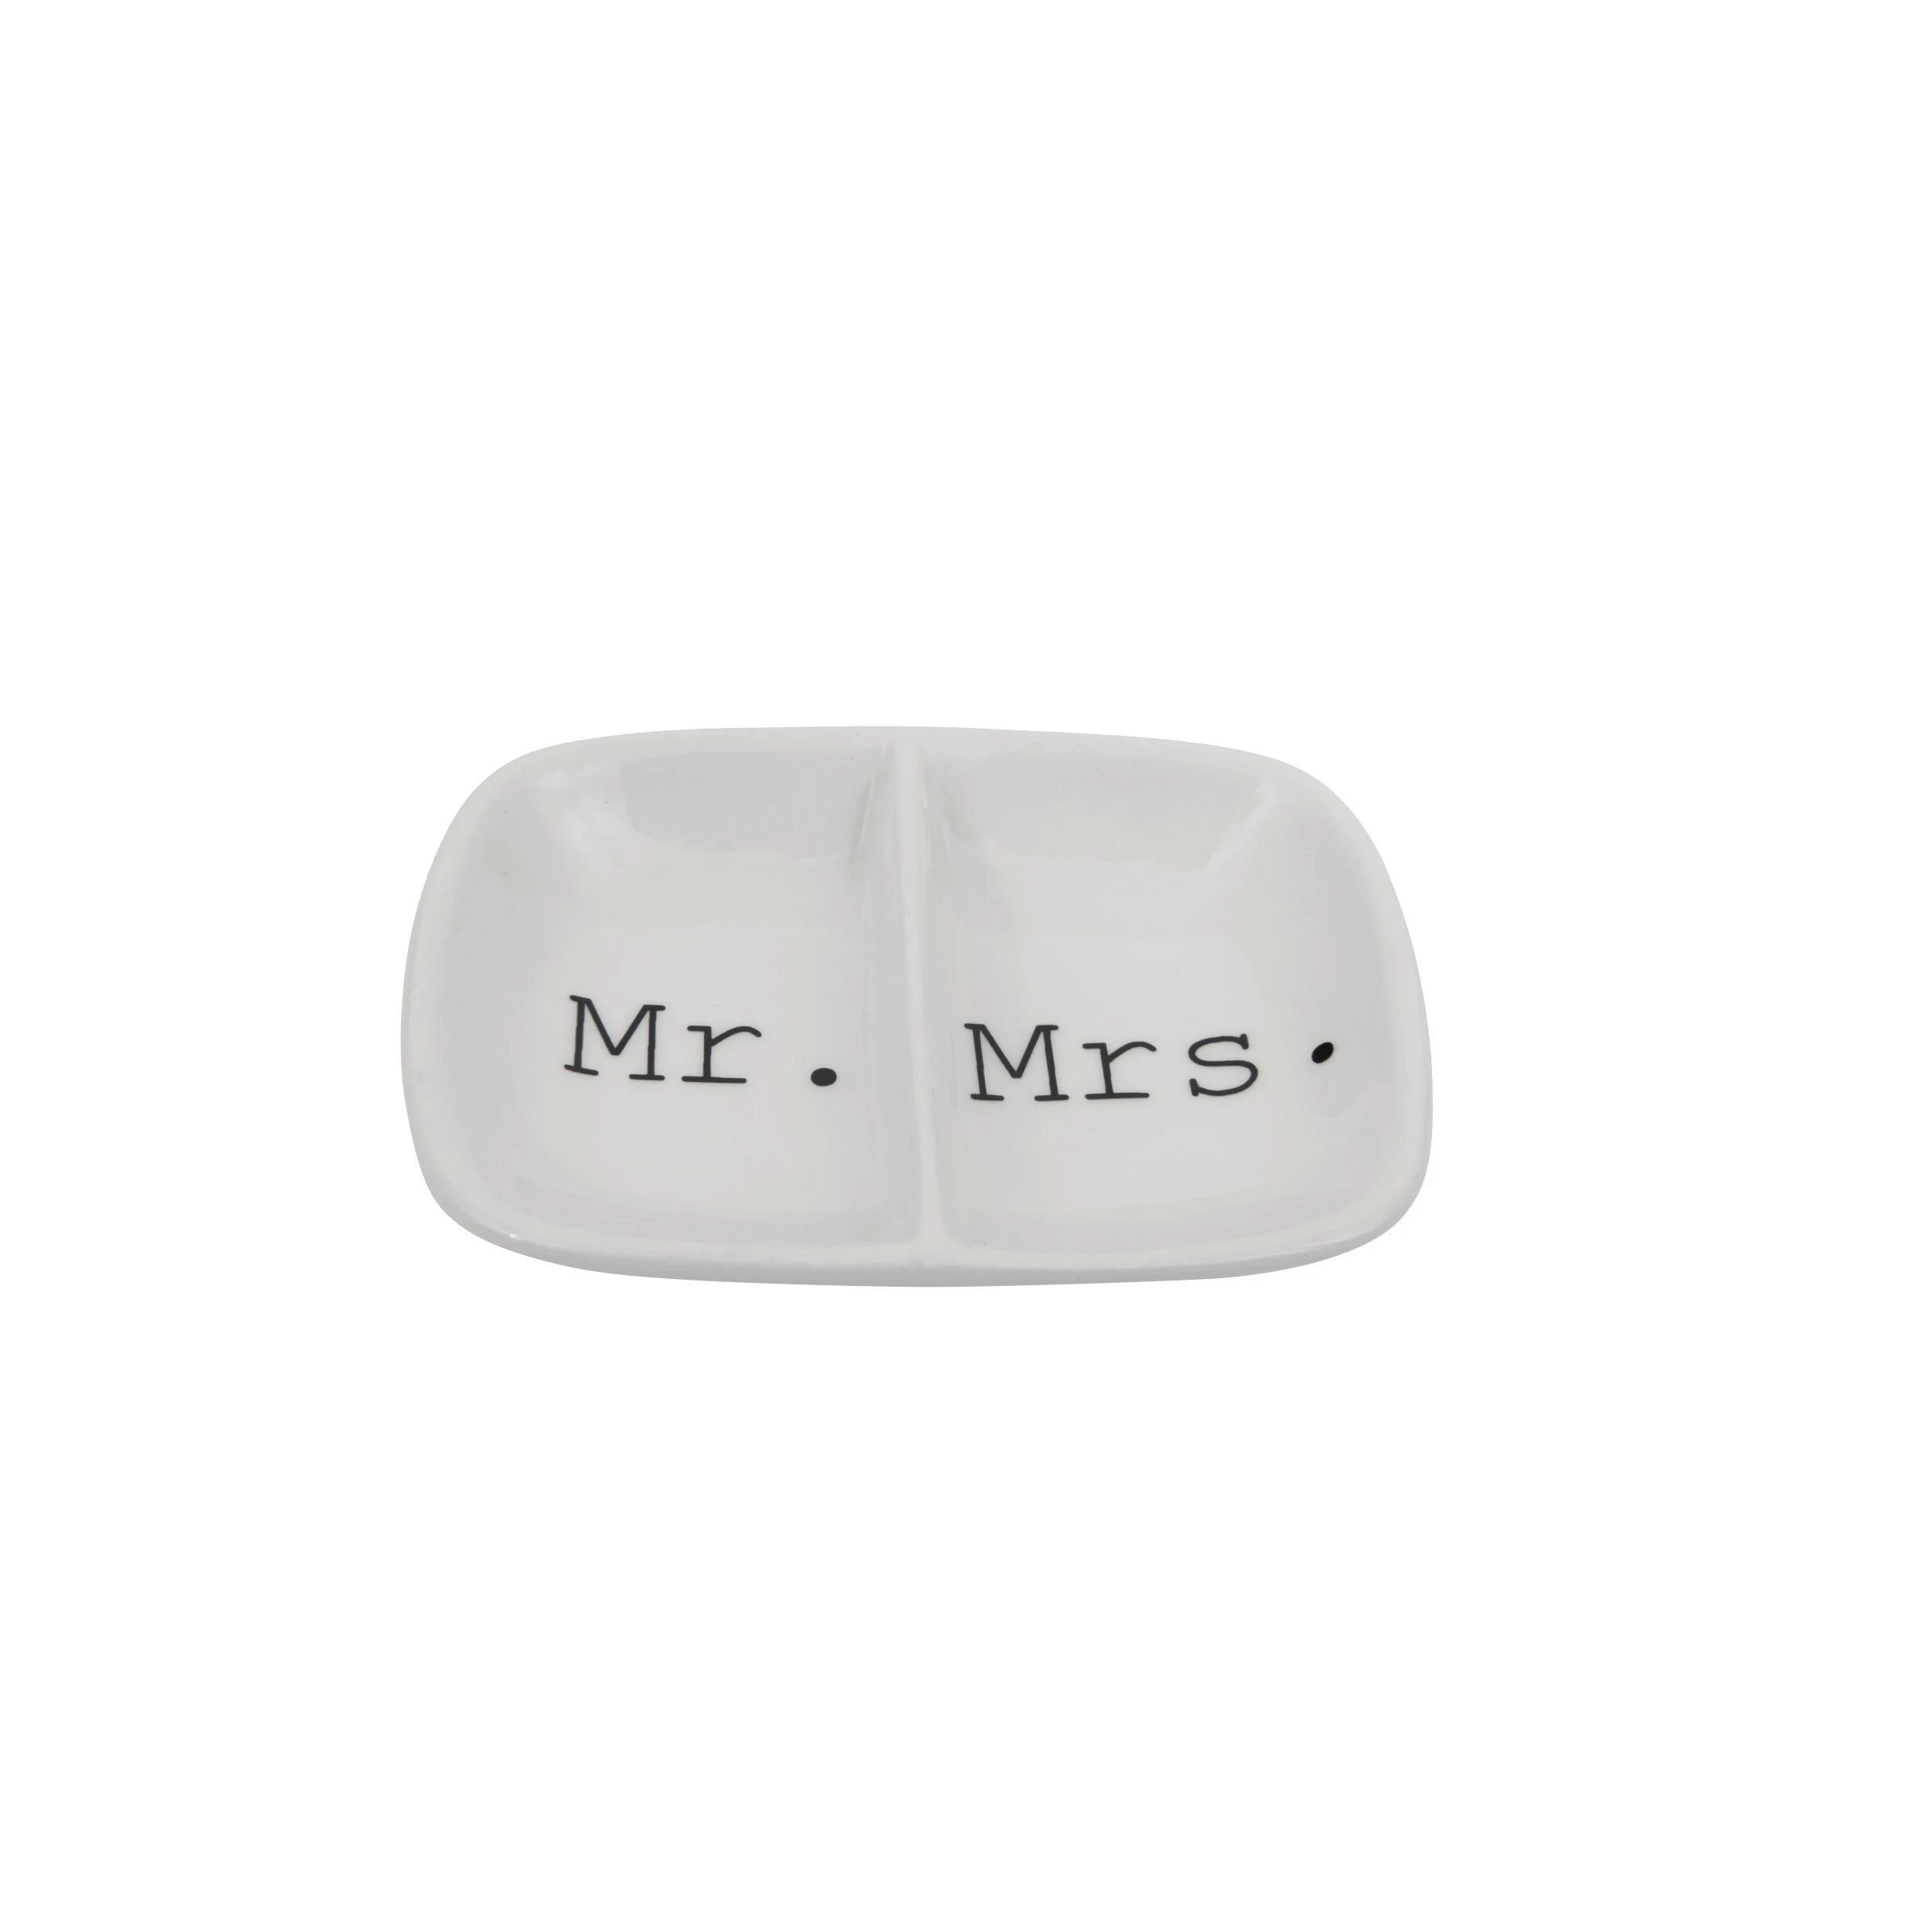 Mr. / Mrs. Ceramic Dish